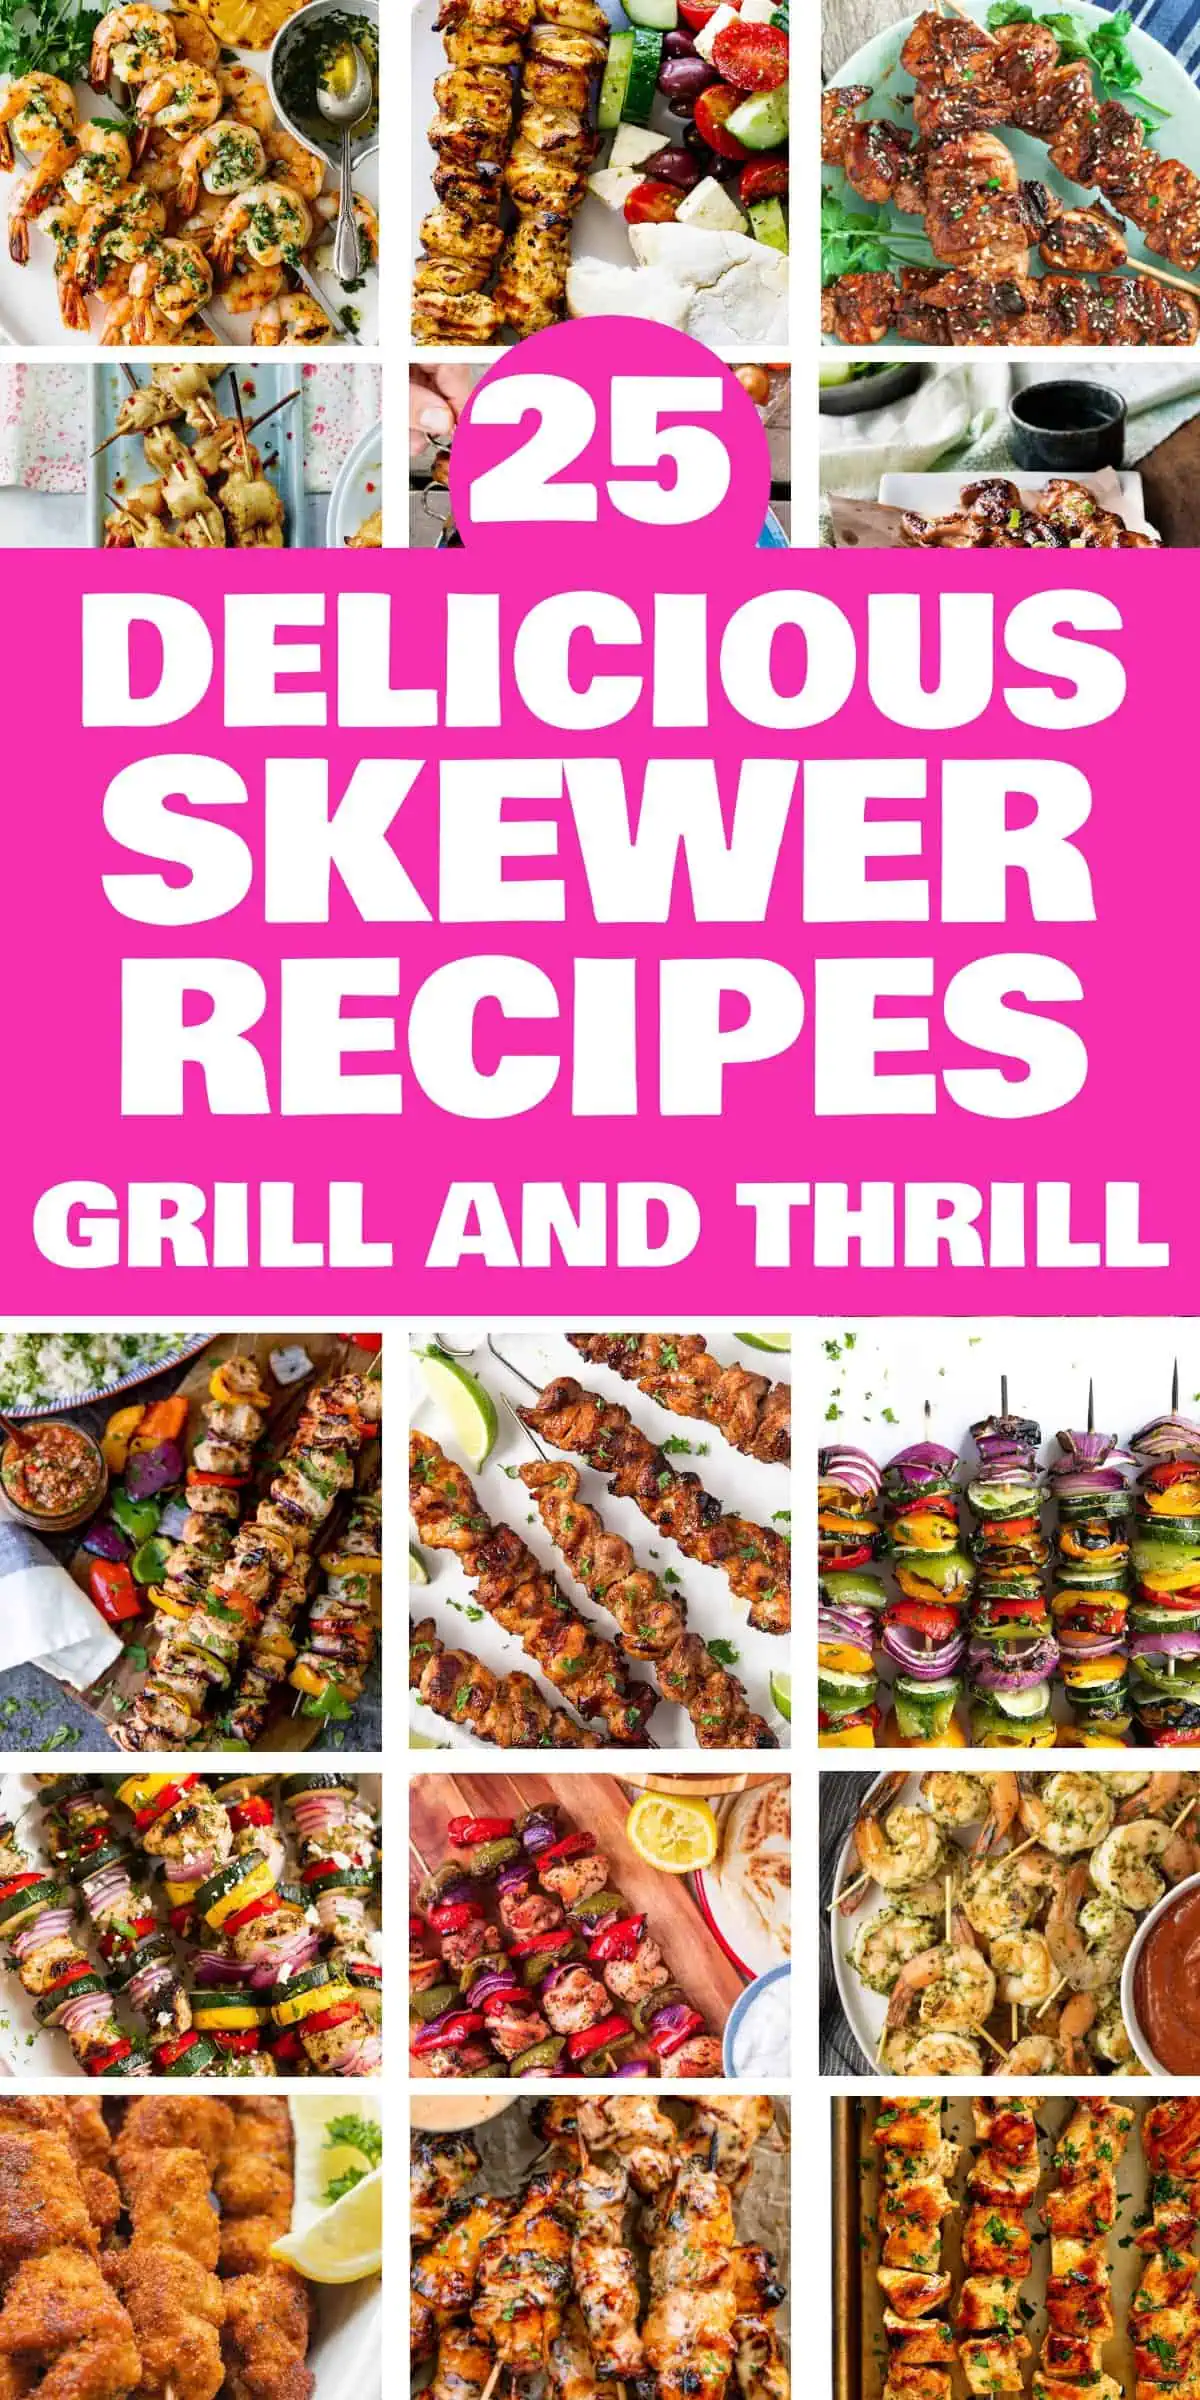 25 Delicious Skewer Recipes